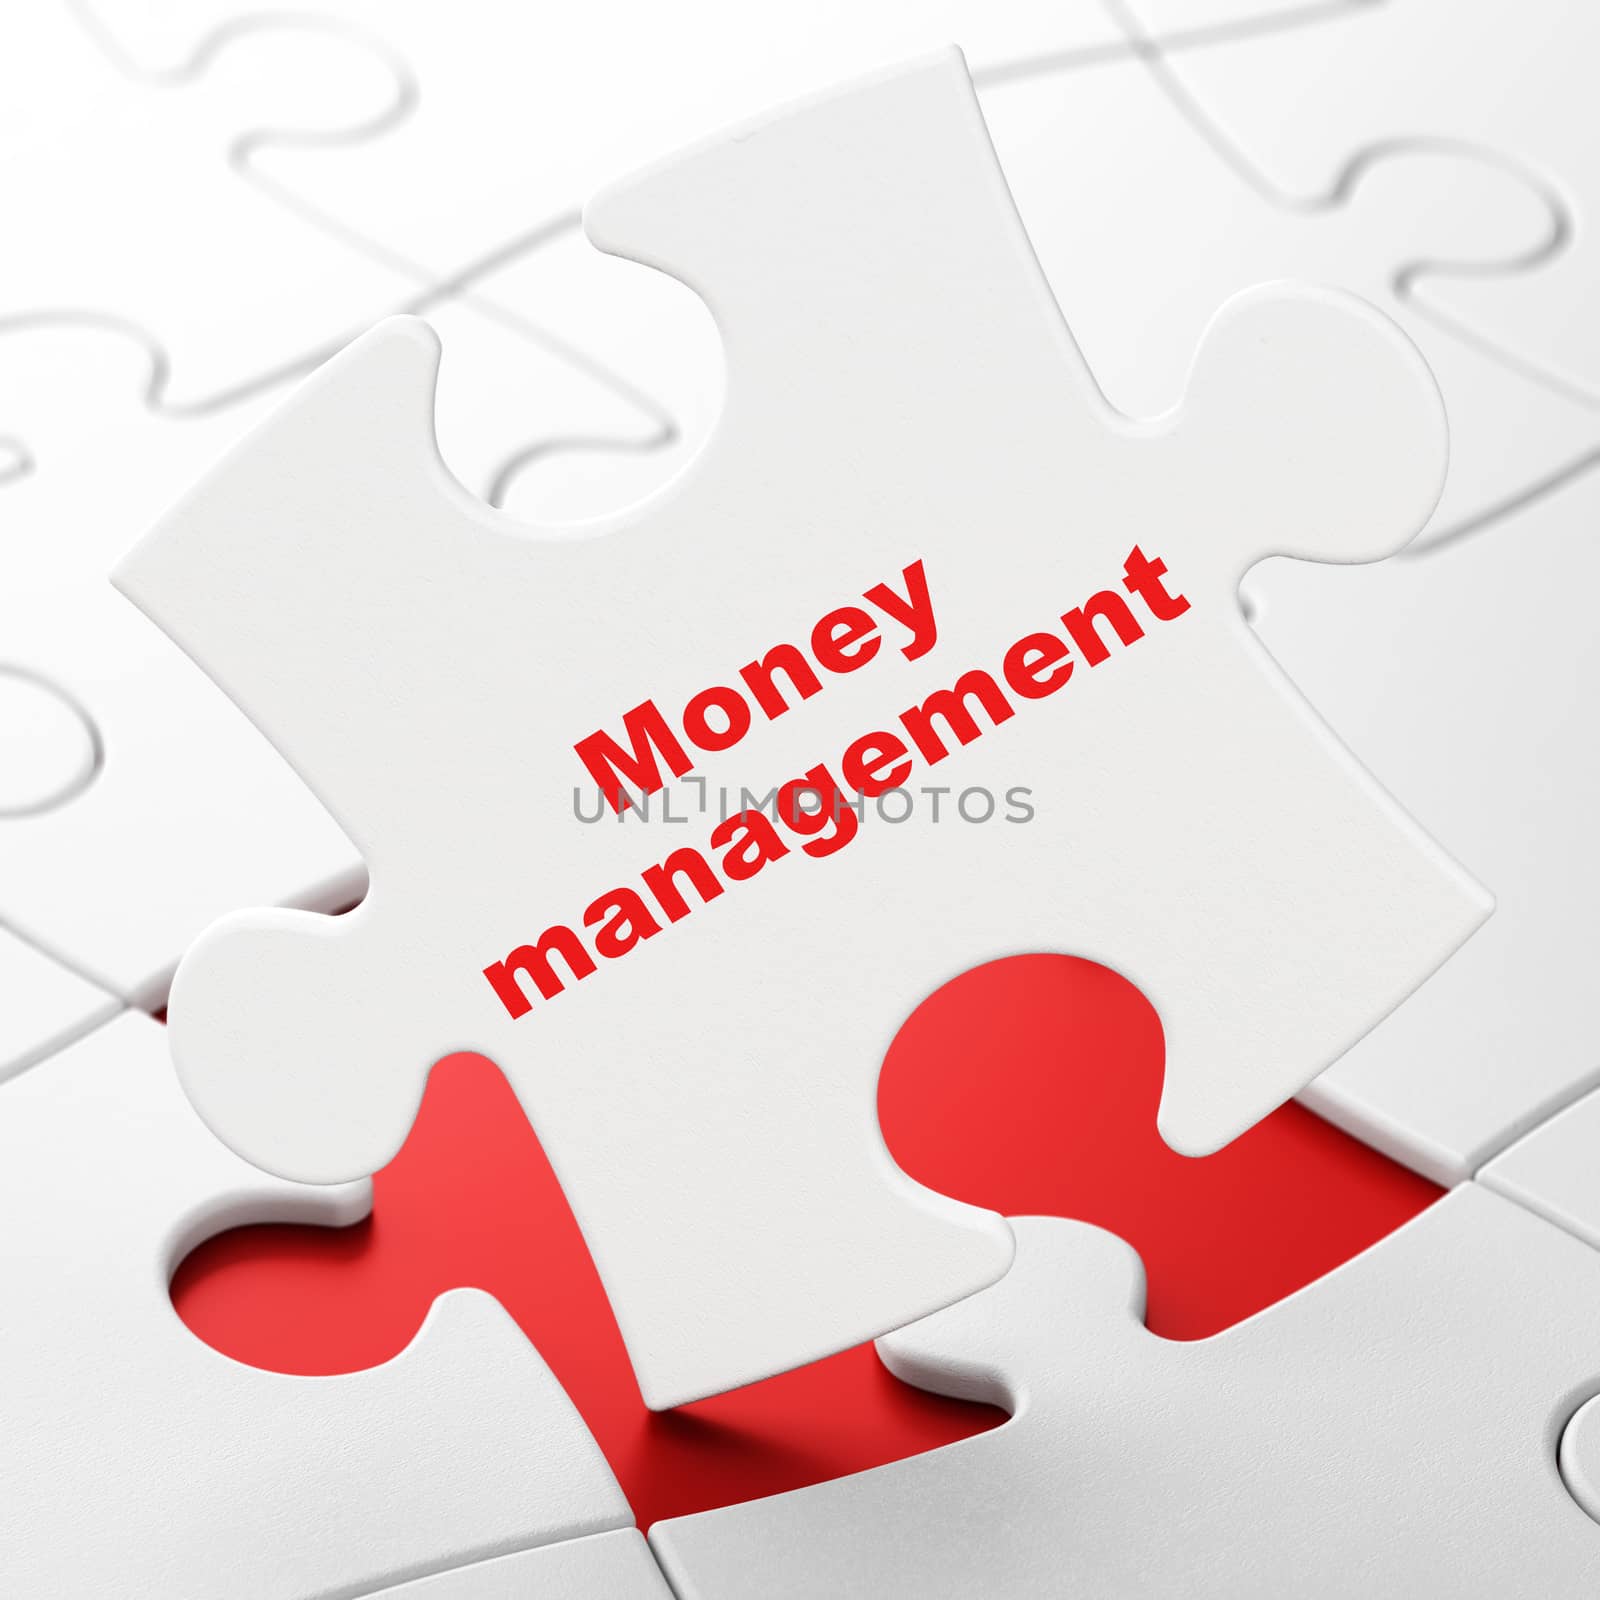 Money concept: Money Management on White puzzle pieces background, 3d render